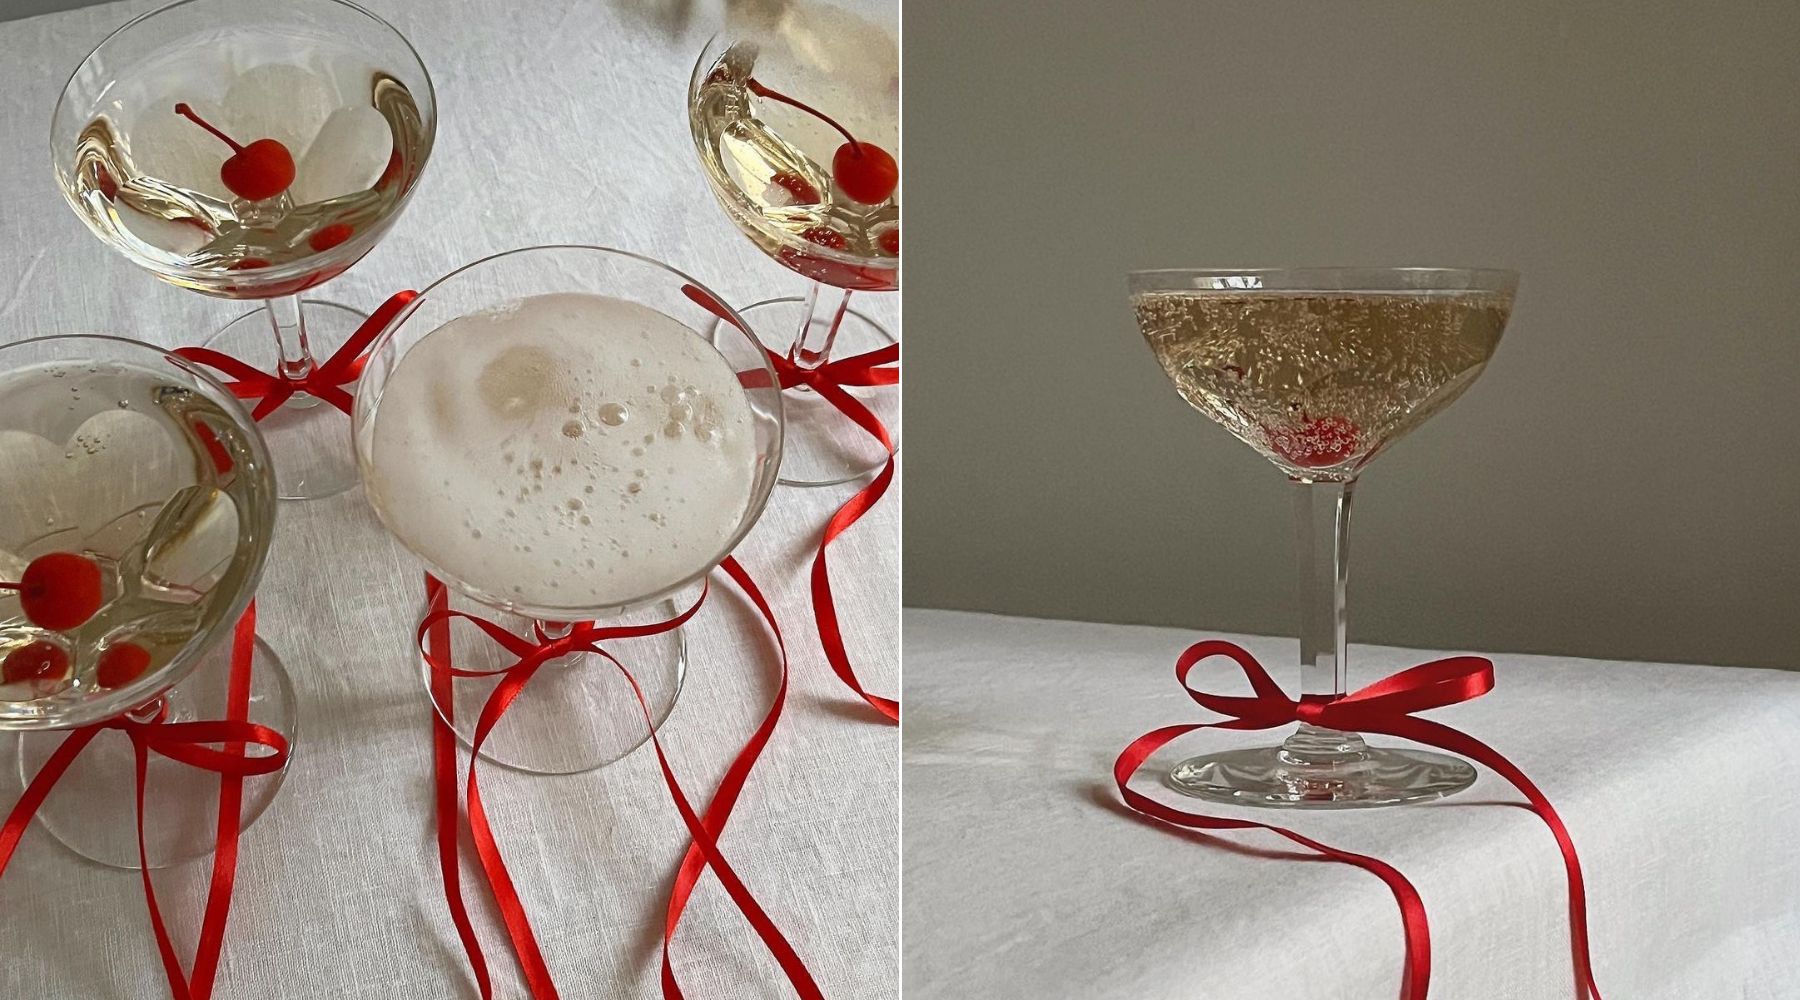 In our ribbon era: Mašnice na čašama su novi easy & sweet trend